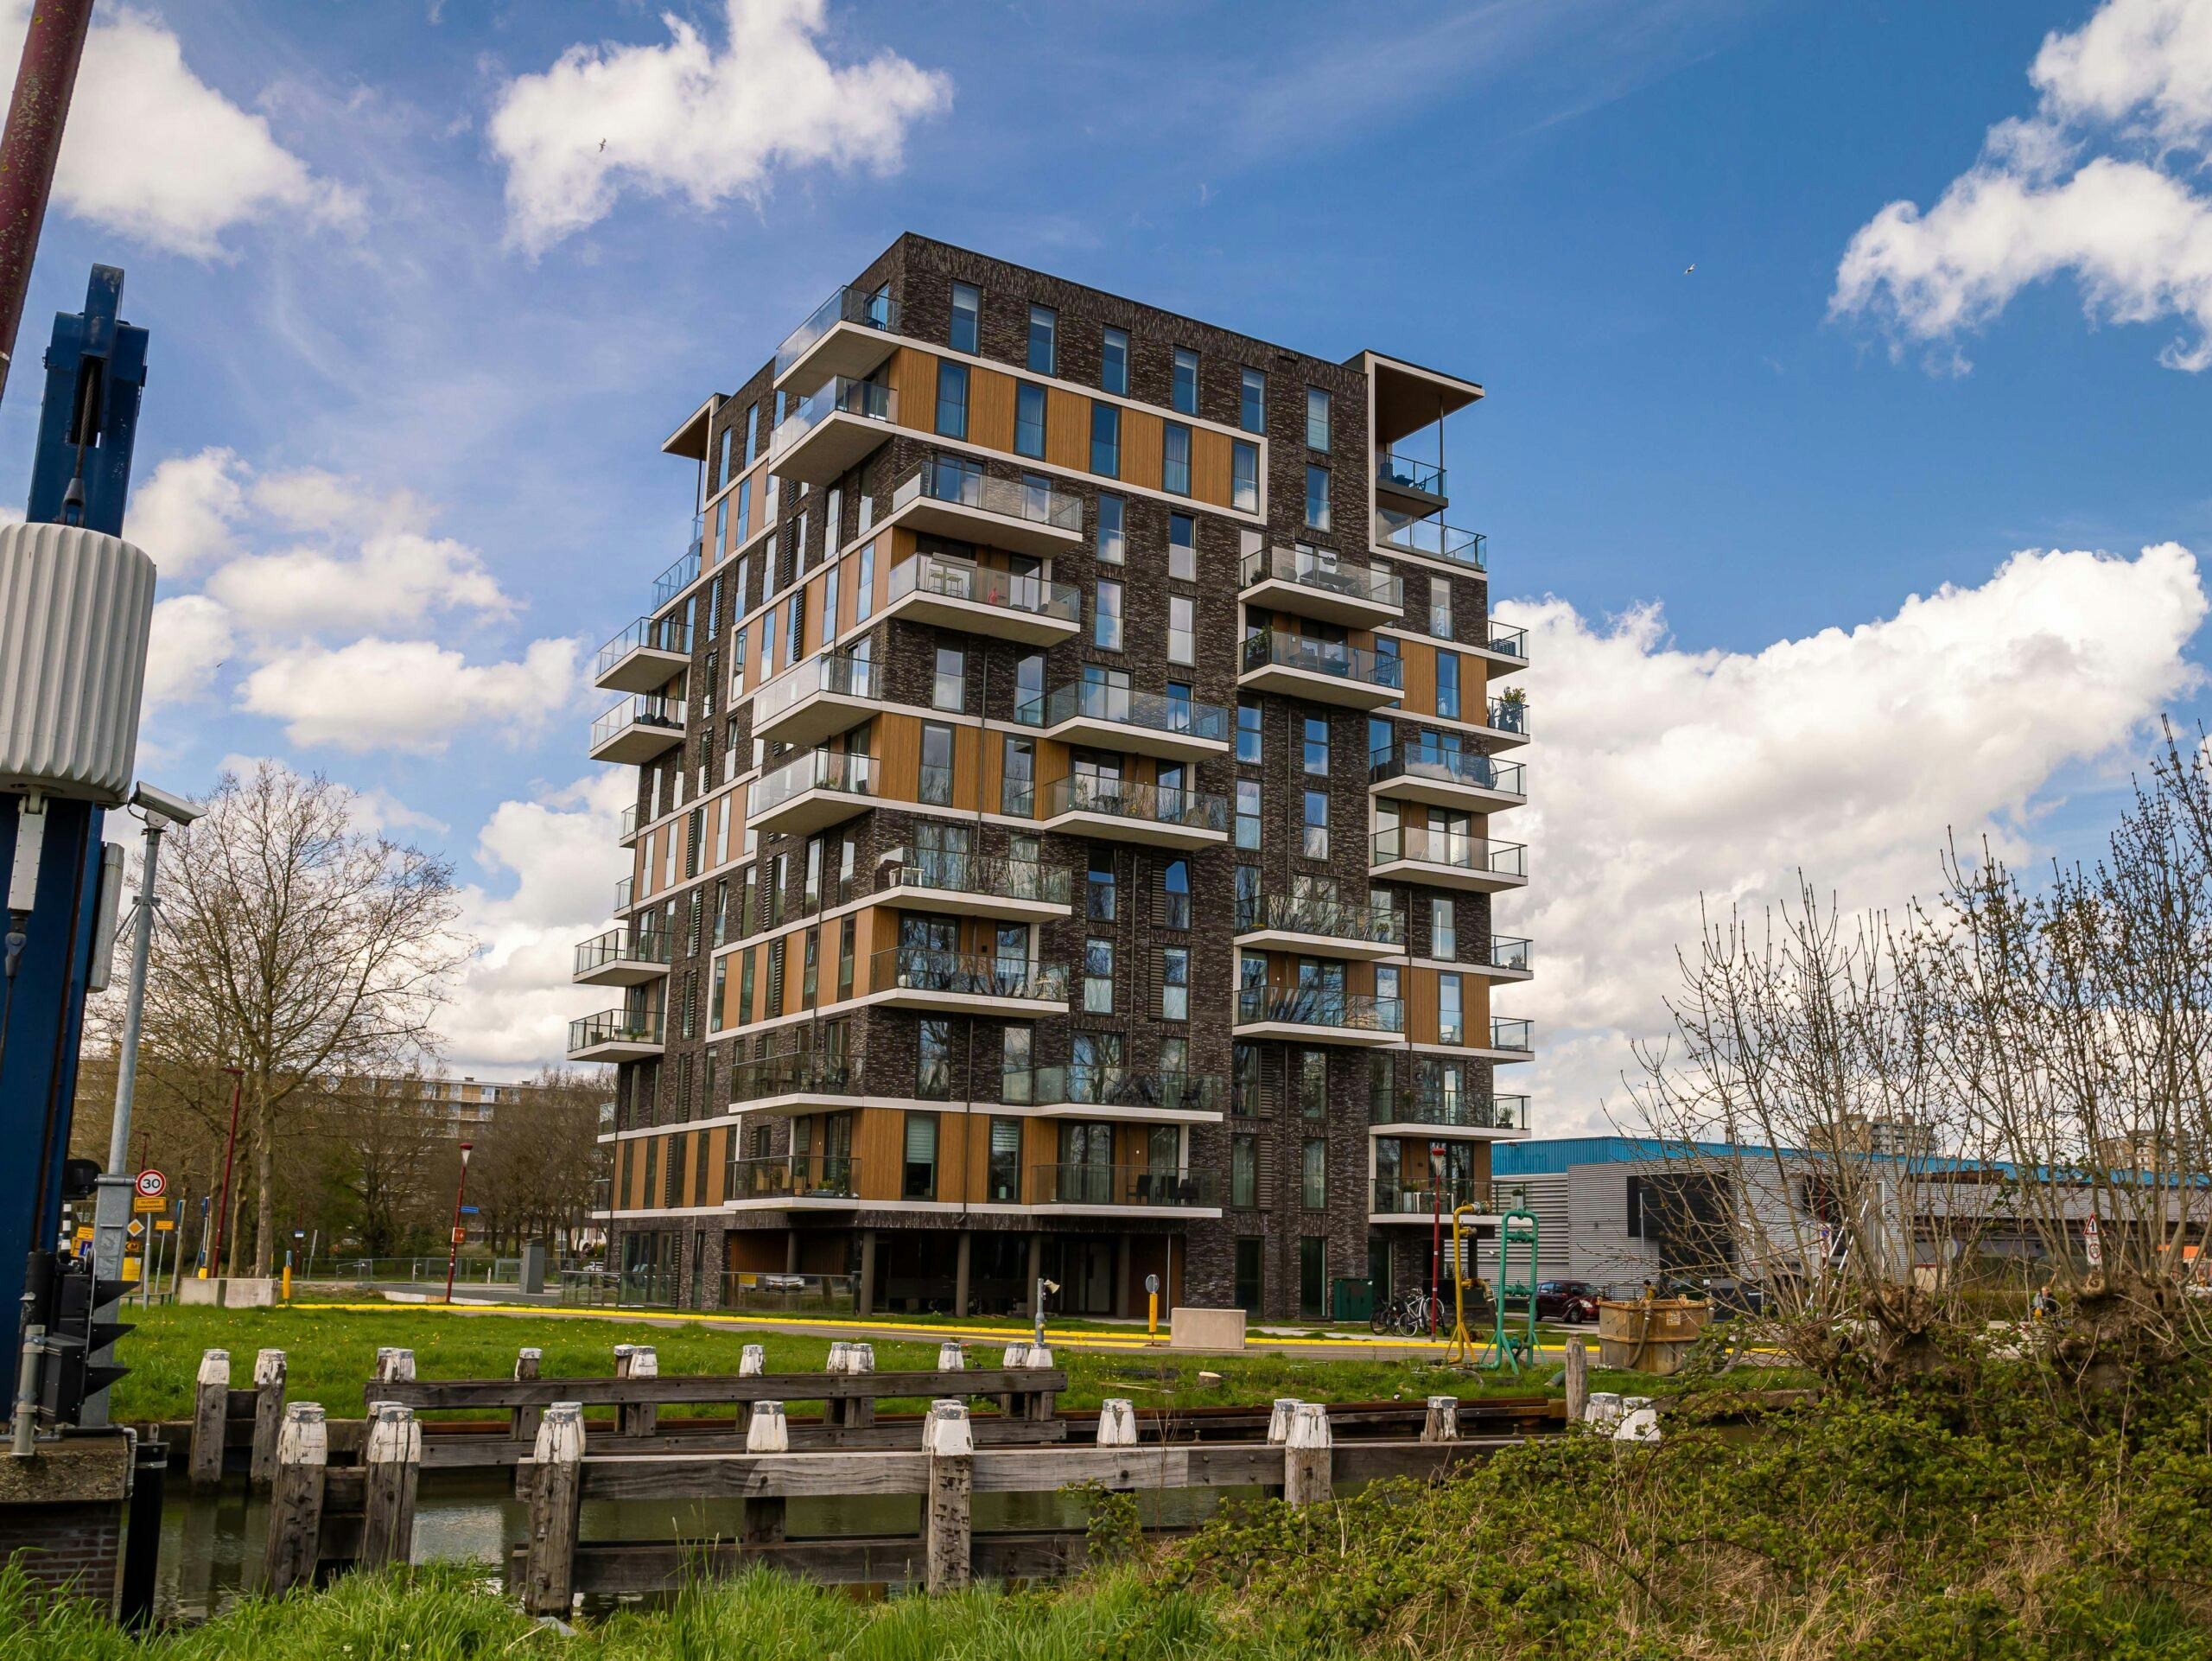 De architect zocht voor deze woontoren in Nieuwegein een oplossing om intensief te kunnen ventileren zonder geluidsoverlast te veroorzaken. 